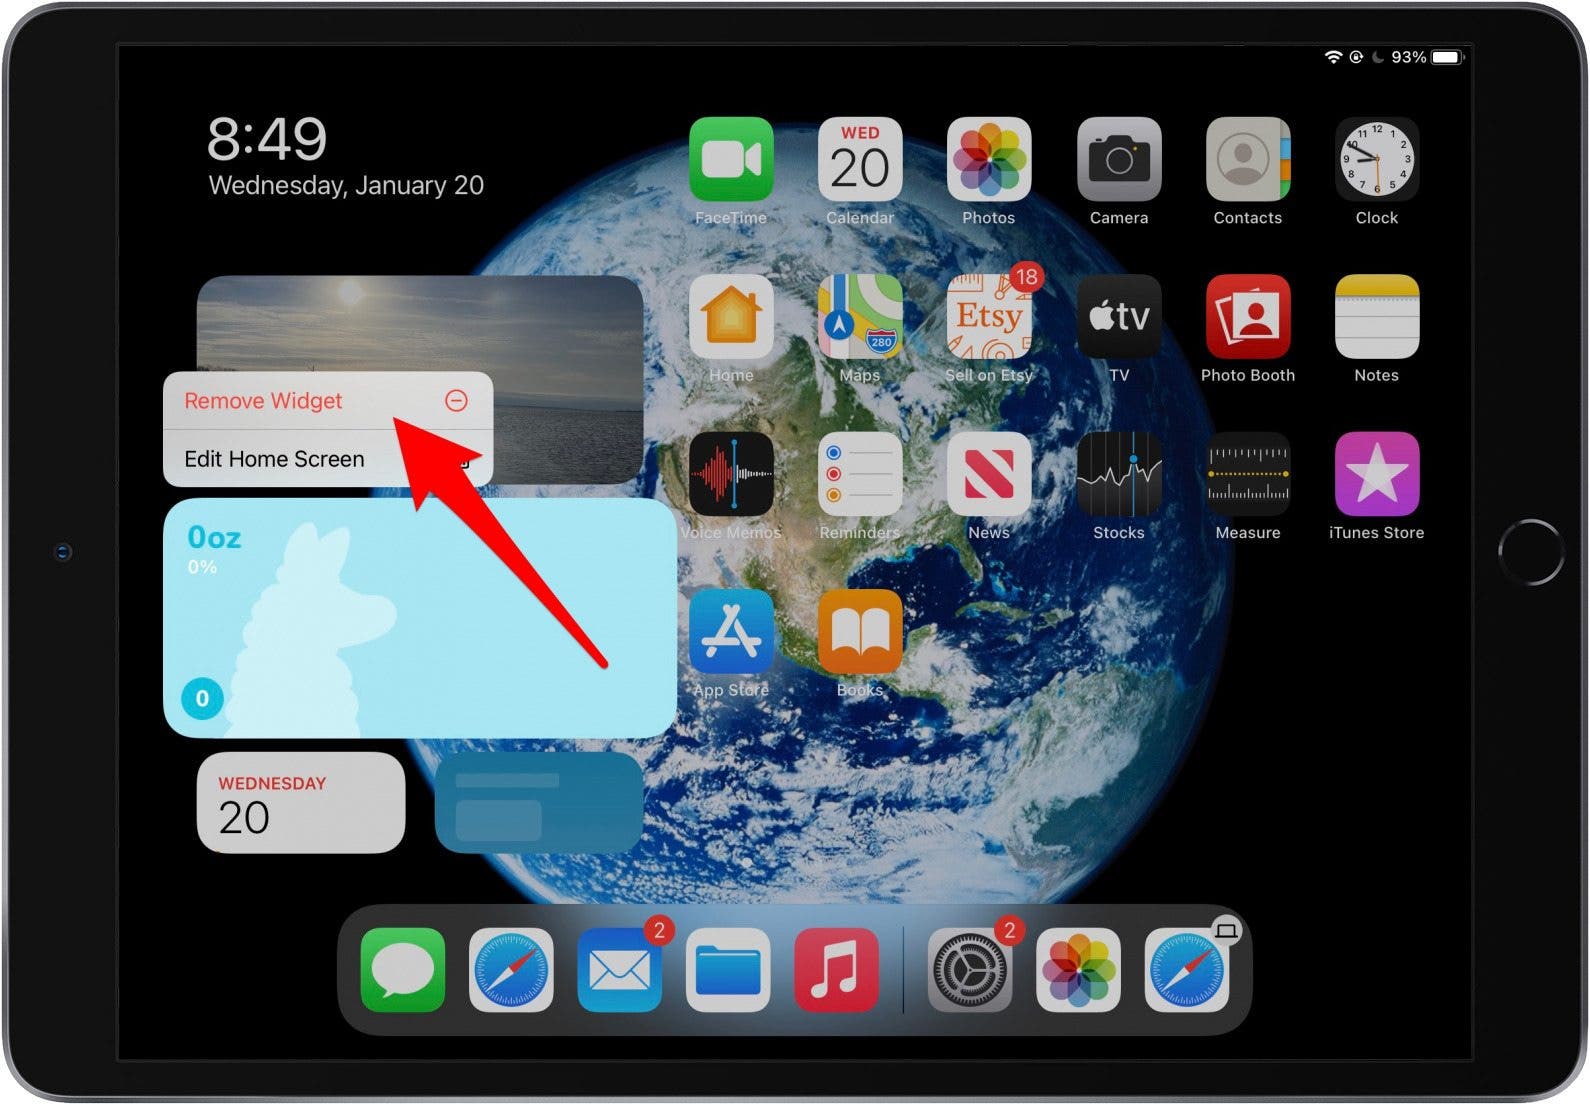 Toque Eliminar widget para eliminar el widget de iPad